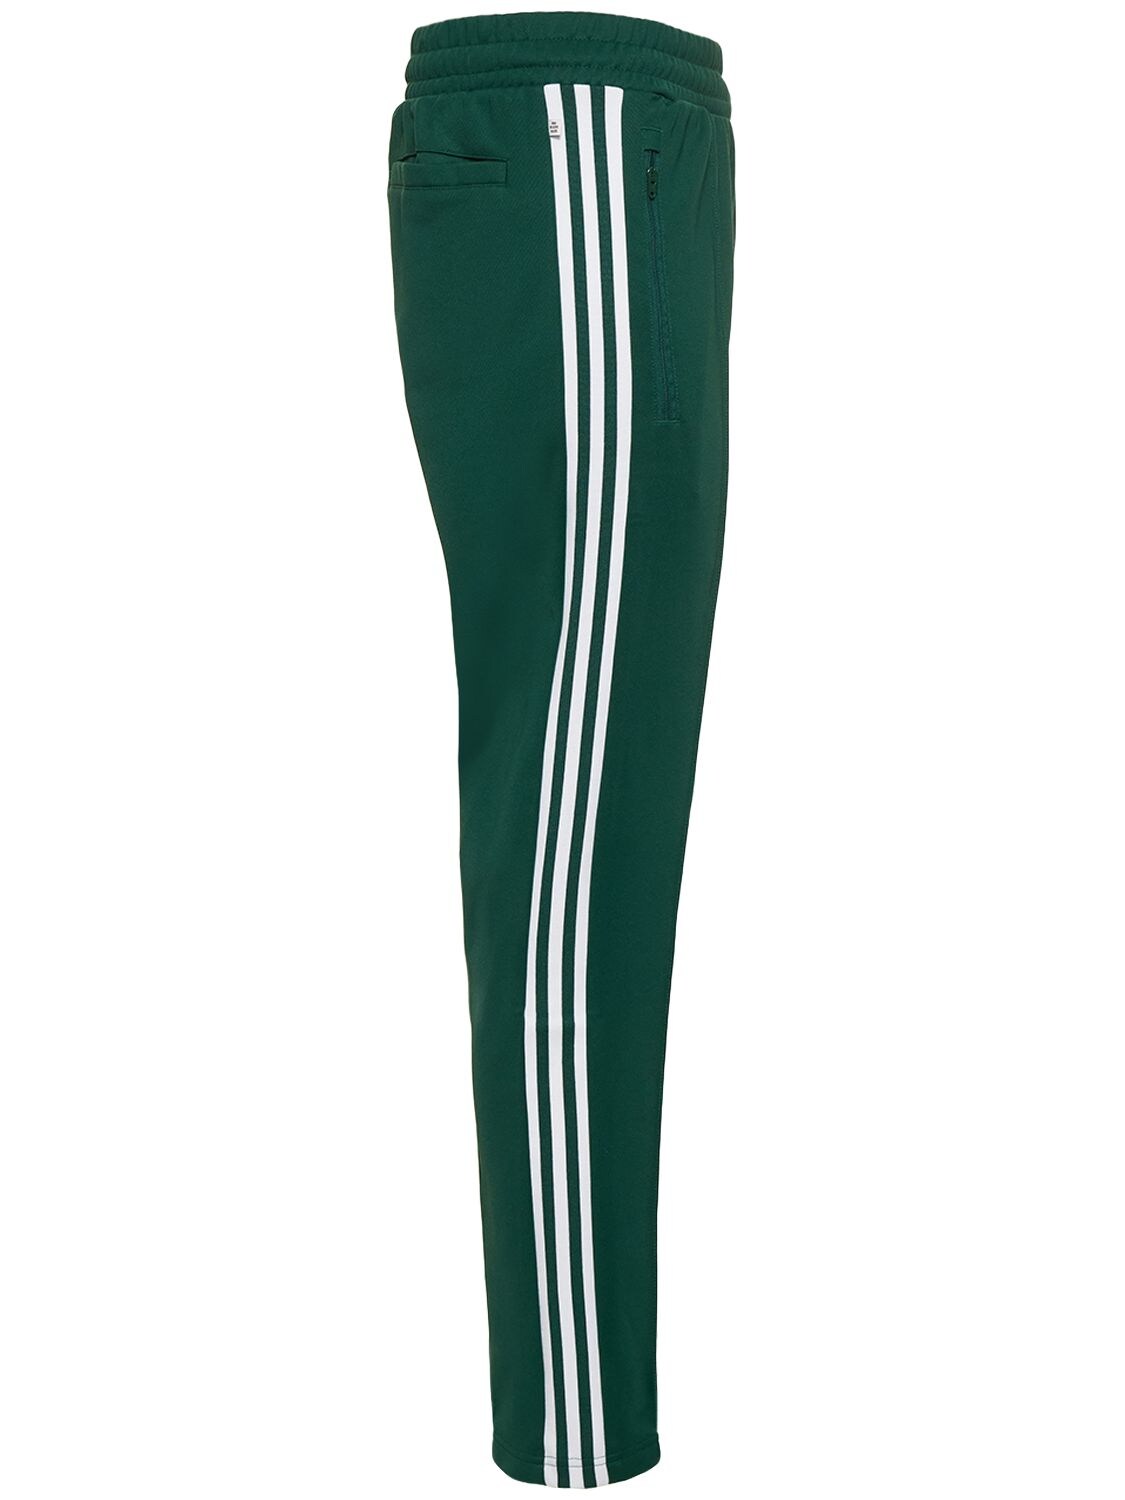 Adidas Originals Adicolor Classics Beckenbauer Track Pants In |